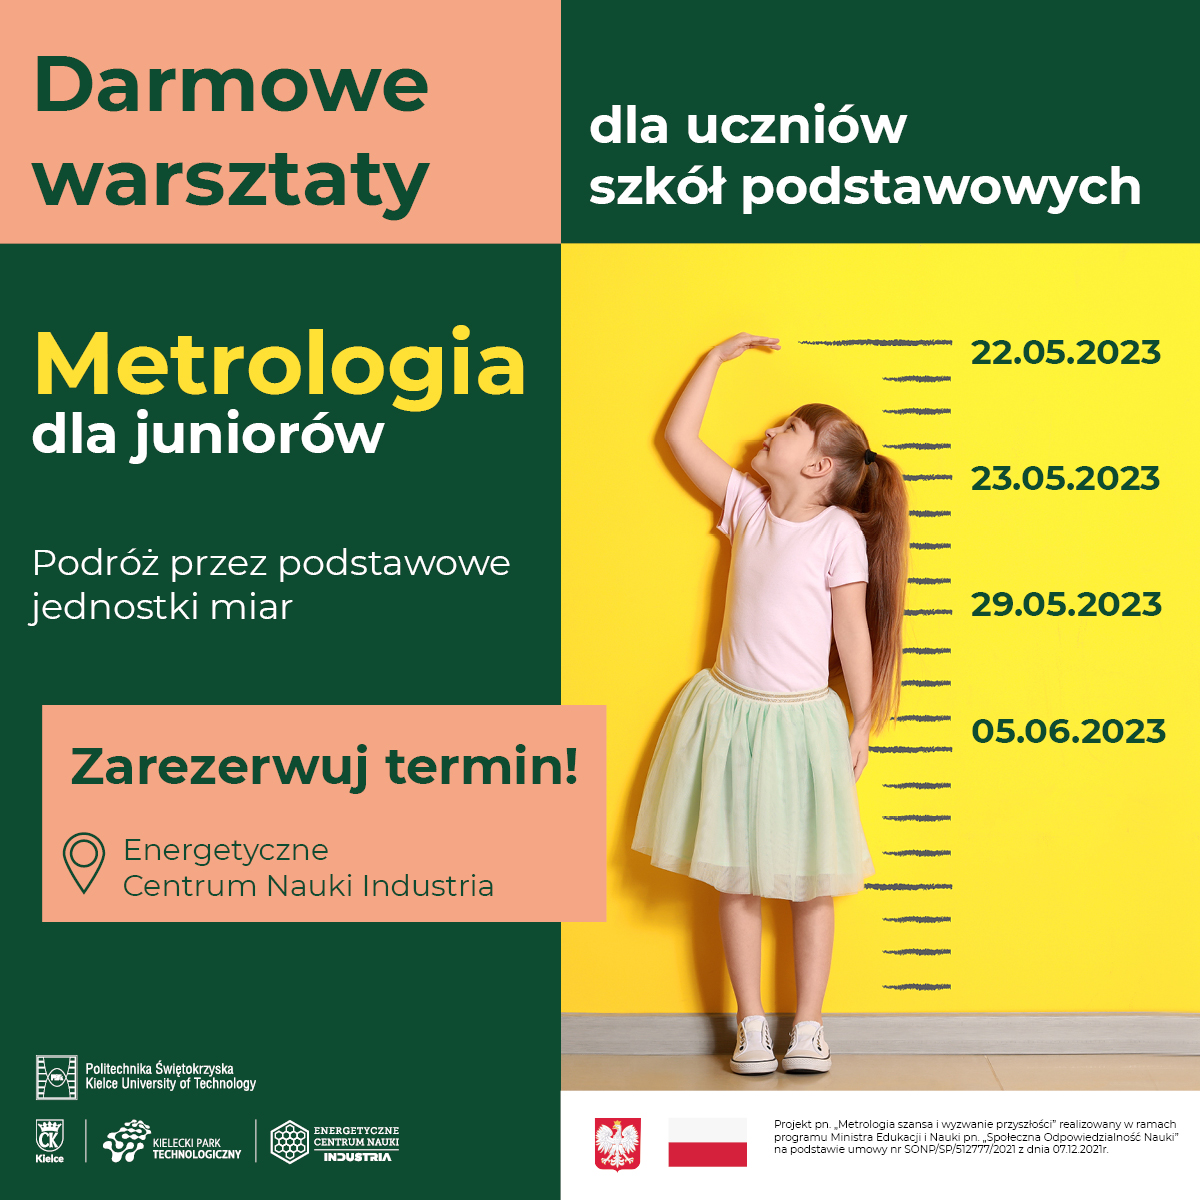 Plakat informujący o warsztatach Metrologia dla juniorow